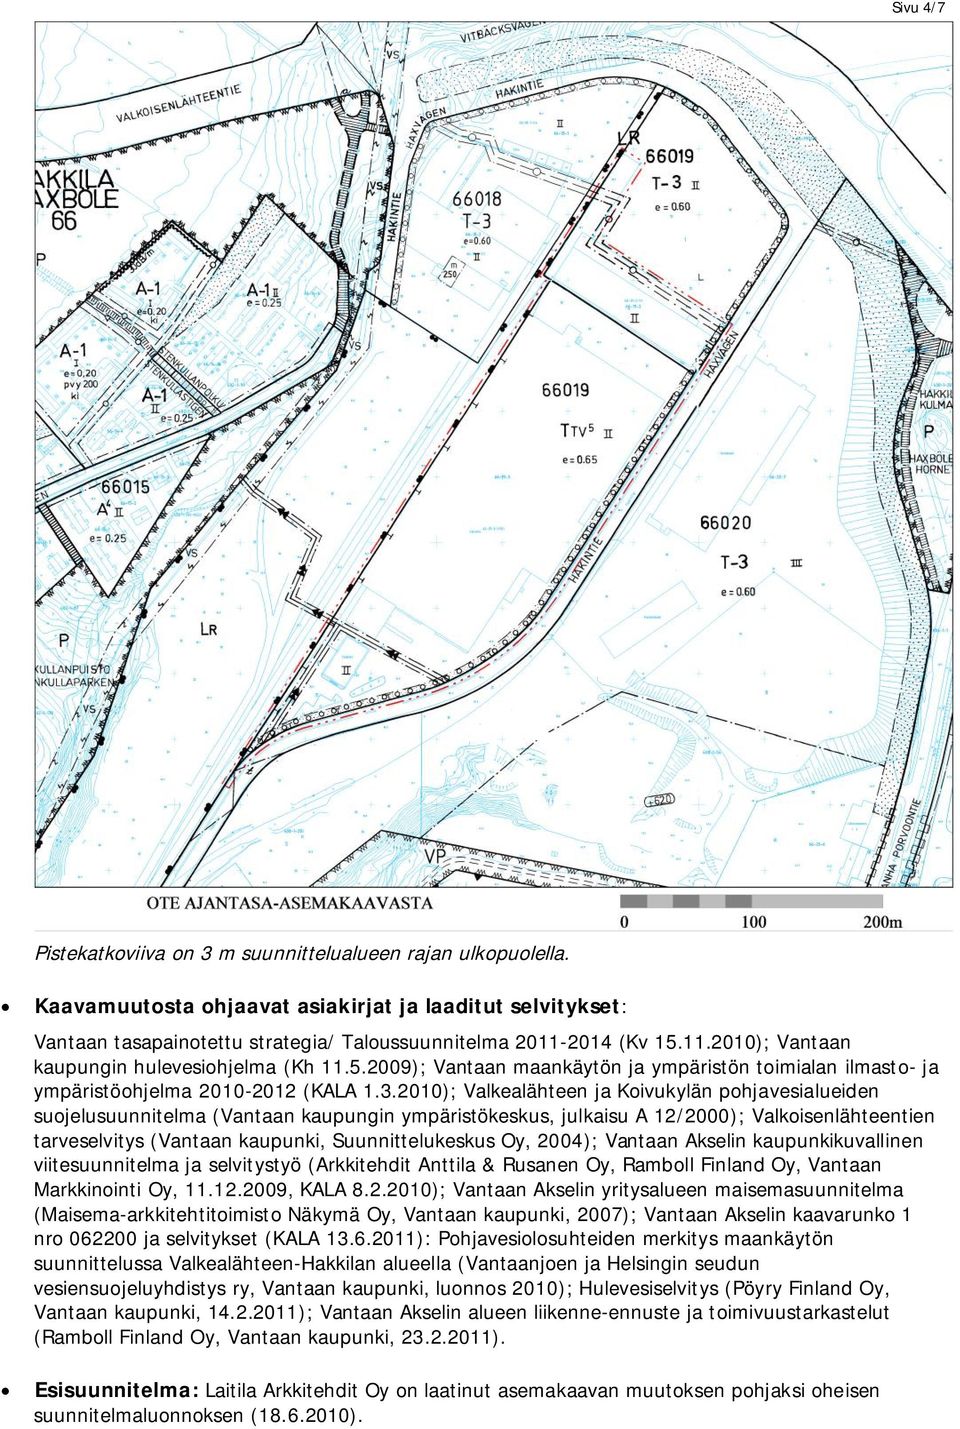 2010); Valkealähteen ja Koivukylän pohjavesialueiden suojelusuunnitelma (Vantaan kaupungin ympäristökeskus, julkaisu A 12/2000); Valkoisenlähteentien tarveselvitys (Vantaan kaupunki,